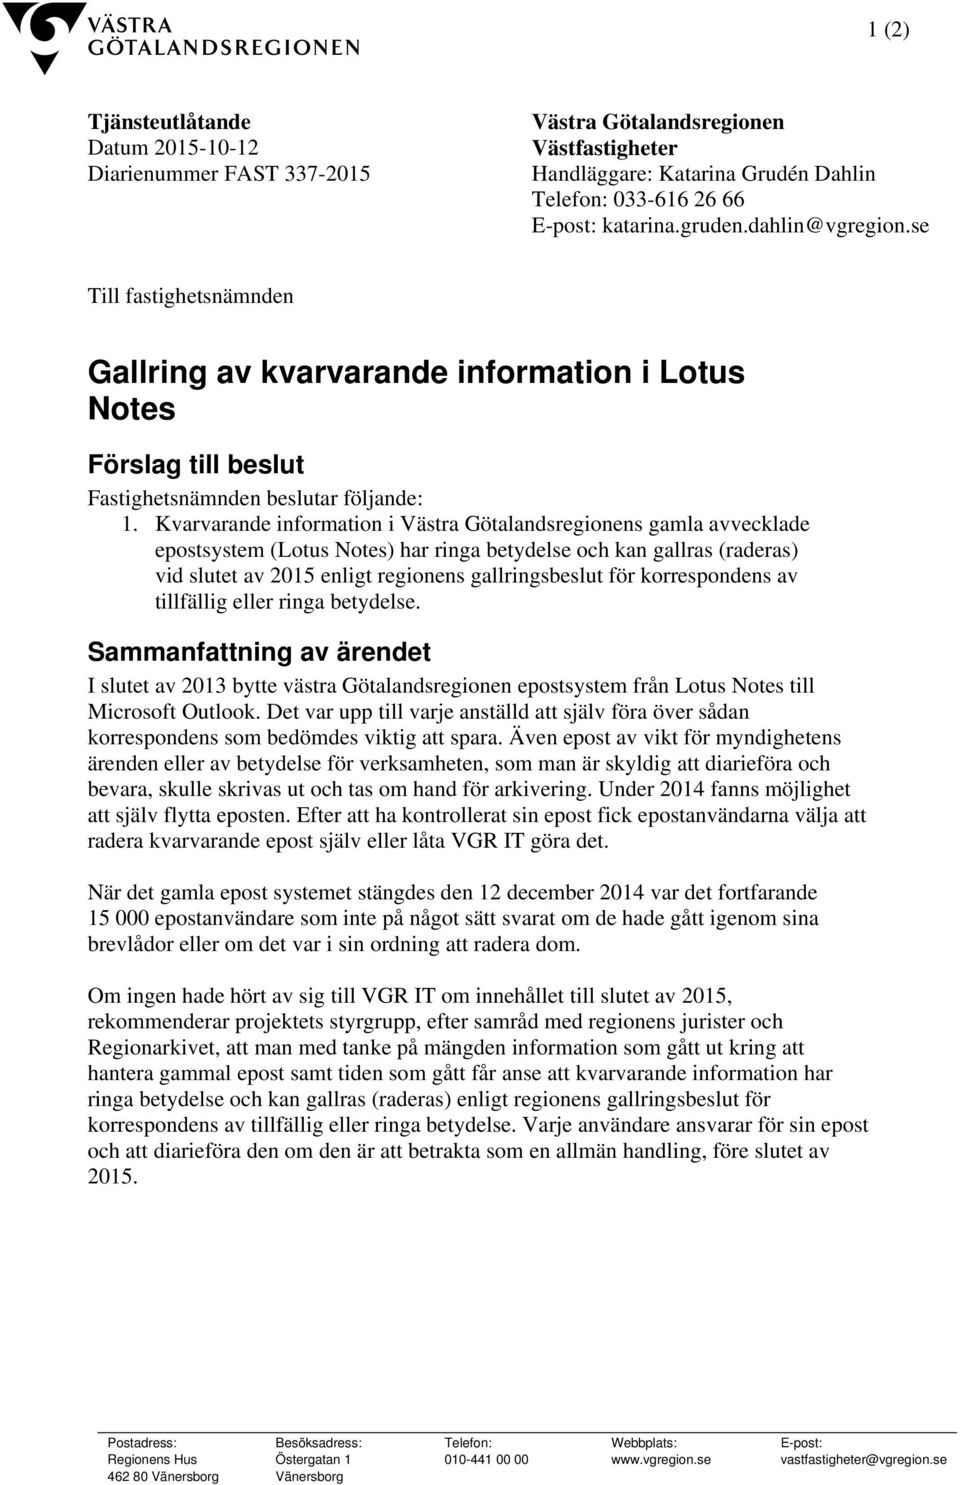 Kvarvarande information i Västra Götalandsregionens gamla avvecklade epostsystem (Lotus Notes) har ringa betydelse och kan gallras (raderas) vid slutet av 2015 enligt regionens gallringsbeslut för